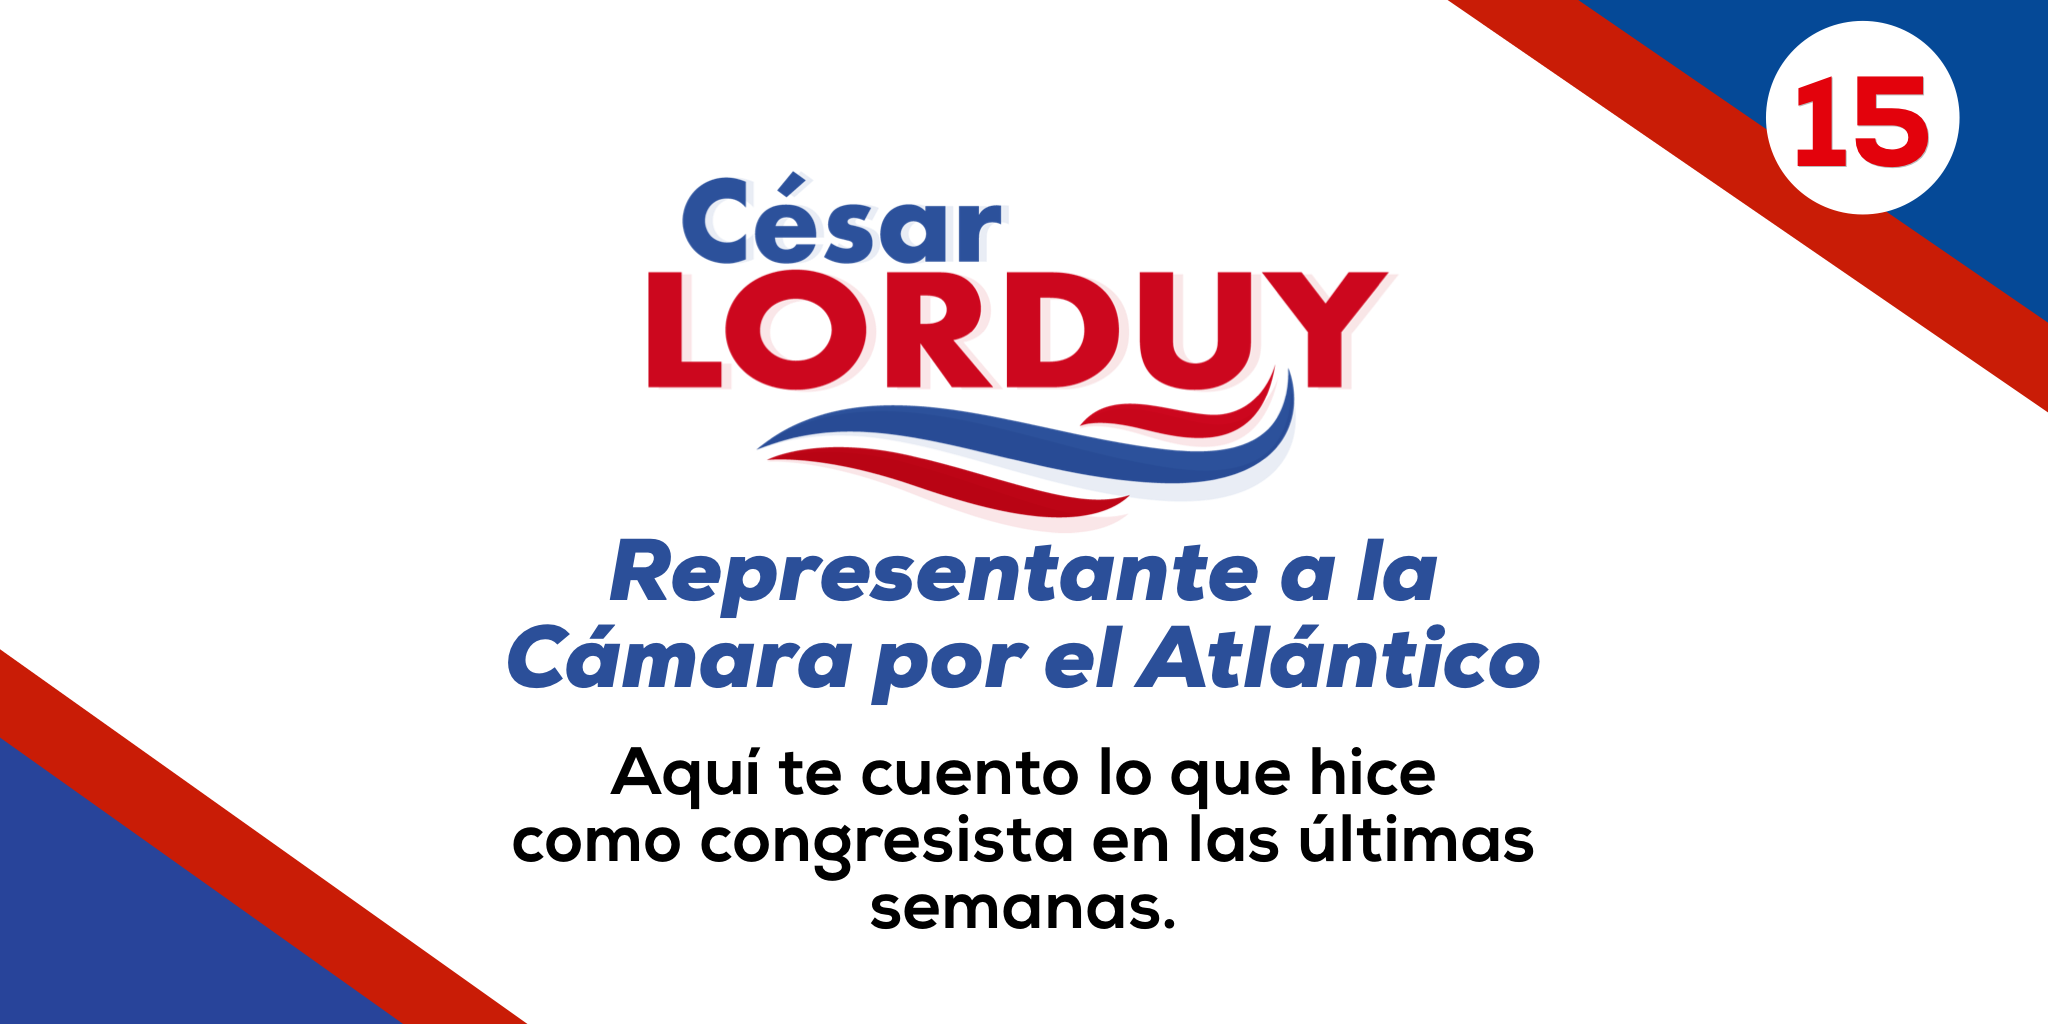 Informe de gestión No. 15 del Representante a la Cámara por el departamento del Atlántico, Cesar Lorduy 1